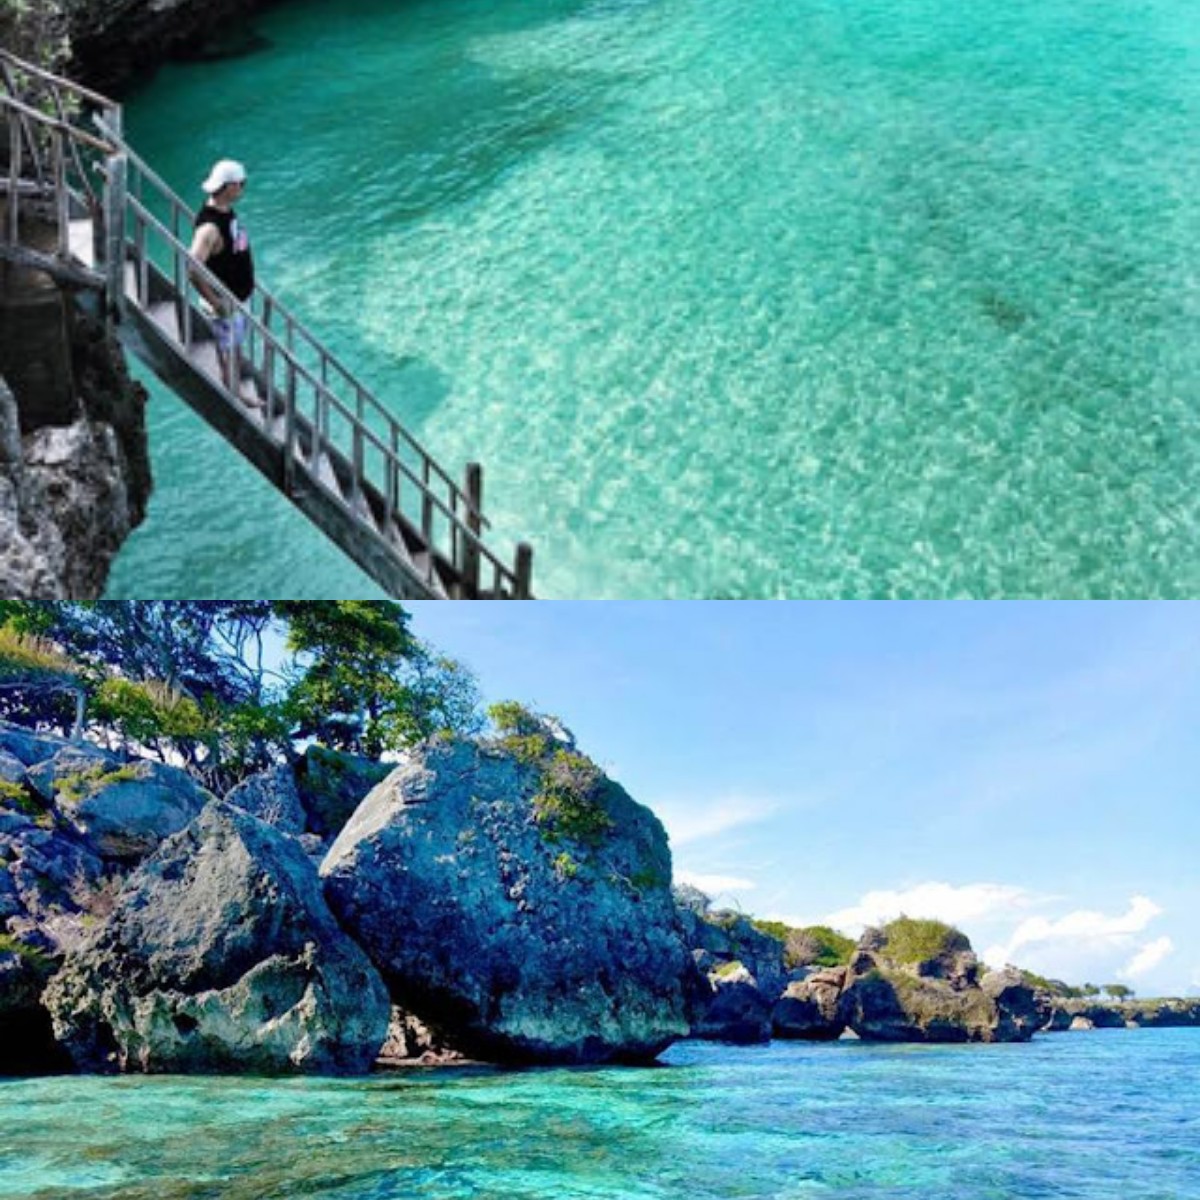 Inilah 5 Keindahan Wisata di Makassar yang Suguhkan Tempat Wisata yang Cantik dan Memukau  